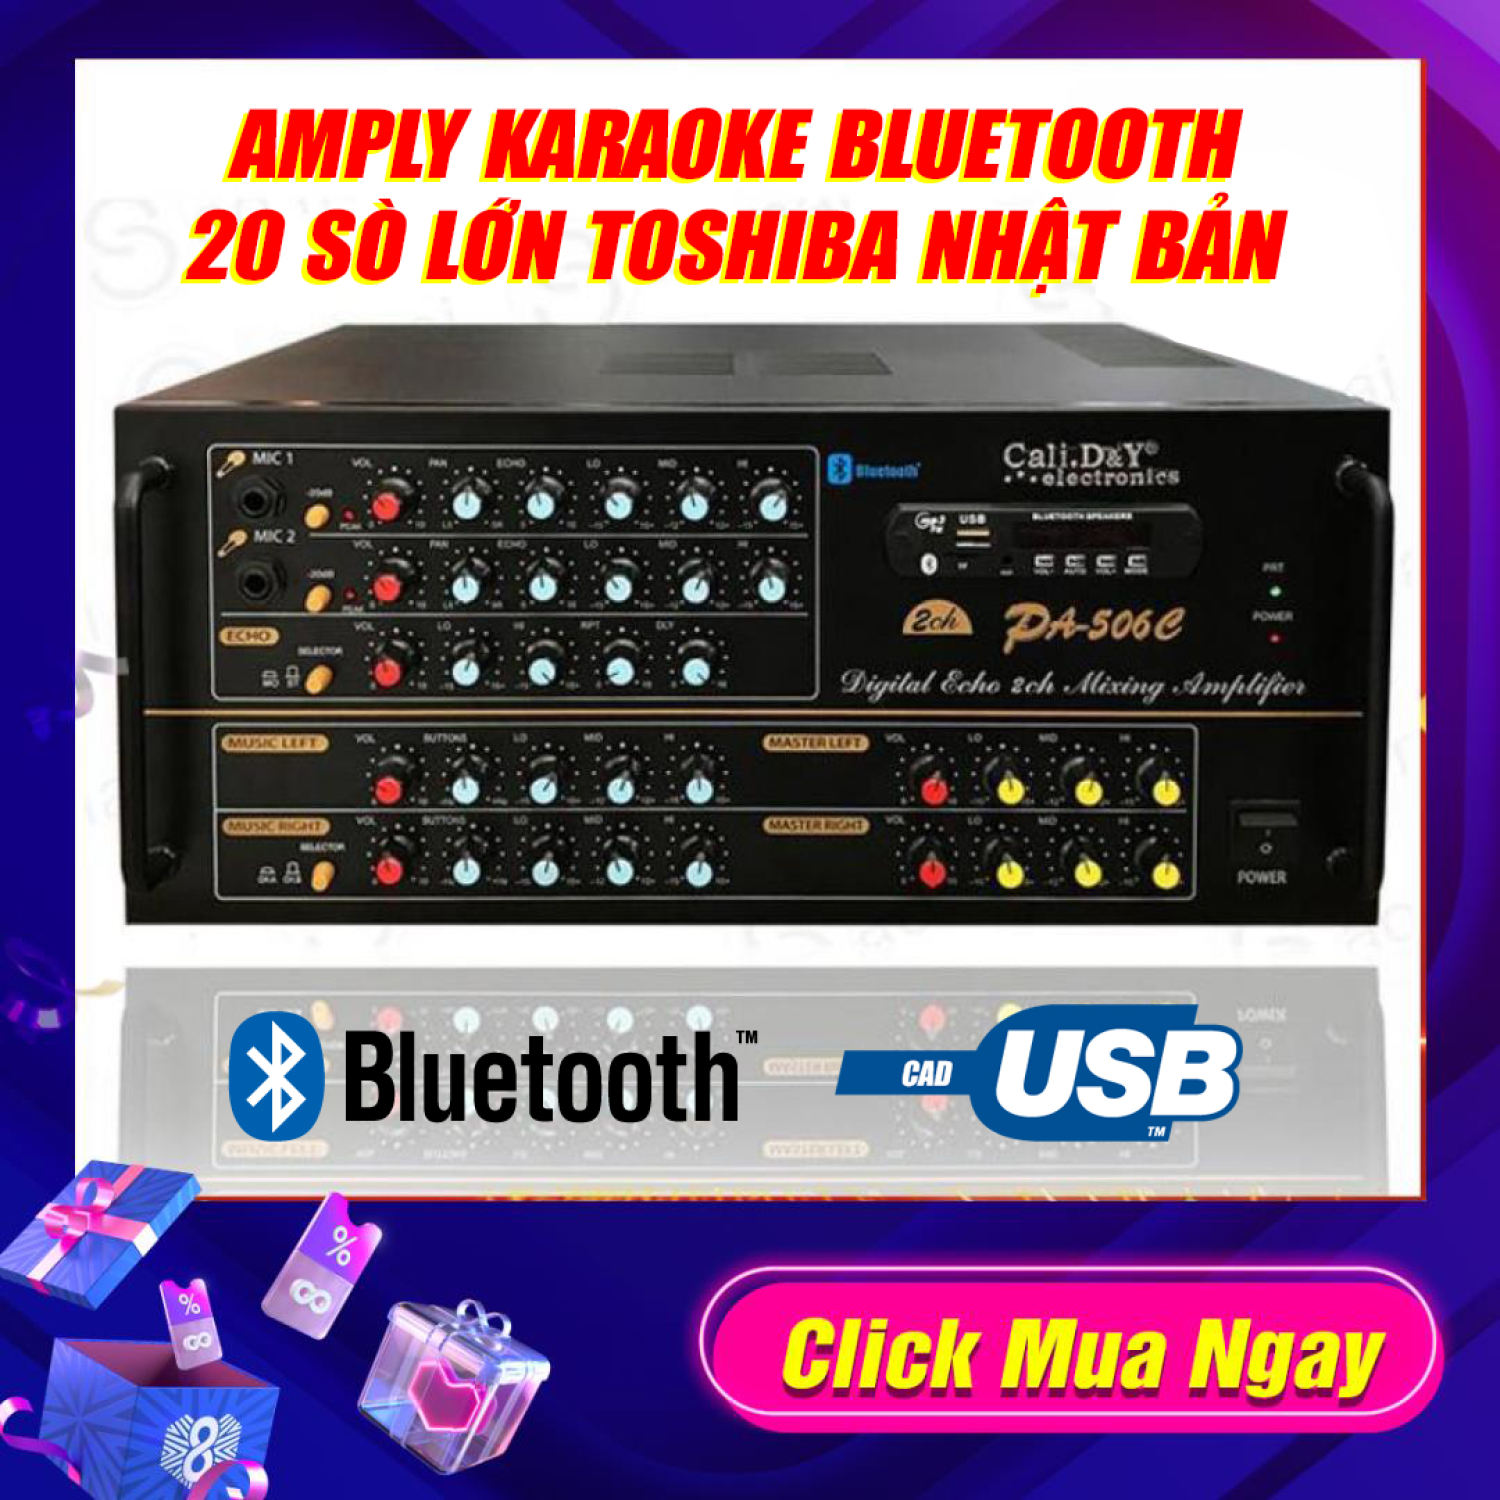 Amply Karaoke amply Cali.D&amp;Y PA-506C 20 sò lớn Toshiba-1080W-4 đường tiếng-công suất lớn (tặng 10m dây loa) Amply 20 Sò Bluetooth Sân Khấu Karaoke Hội Thảo Gia Đình Cali.D&amp;Y PA-506C